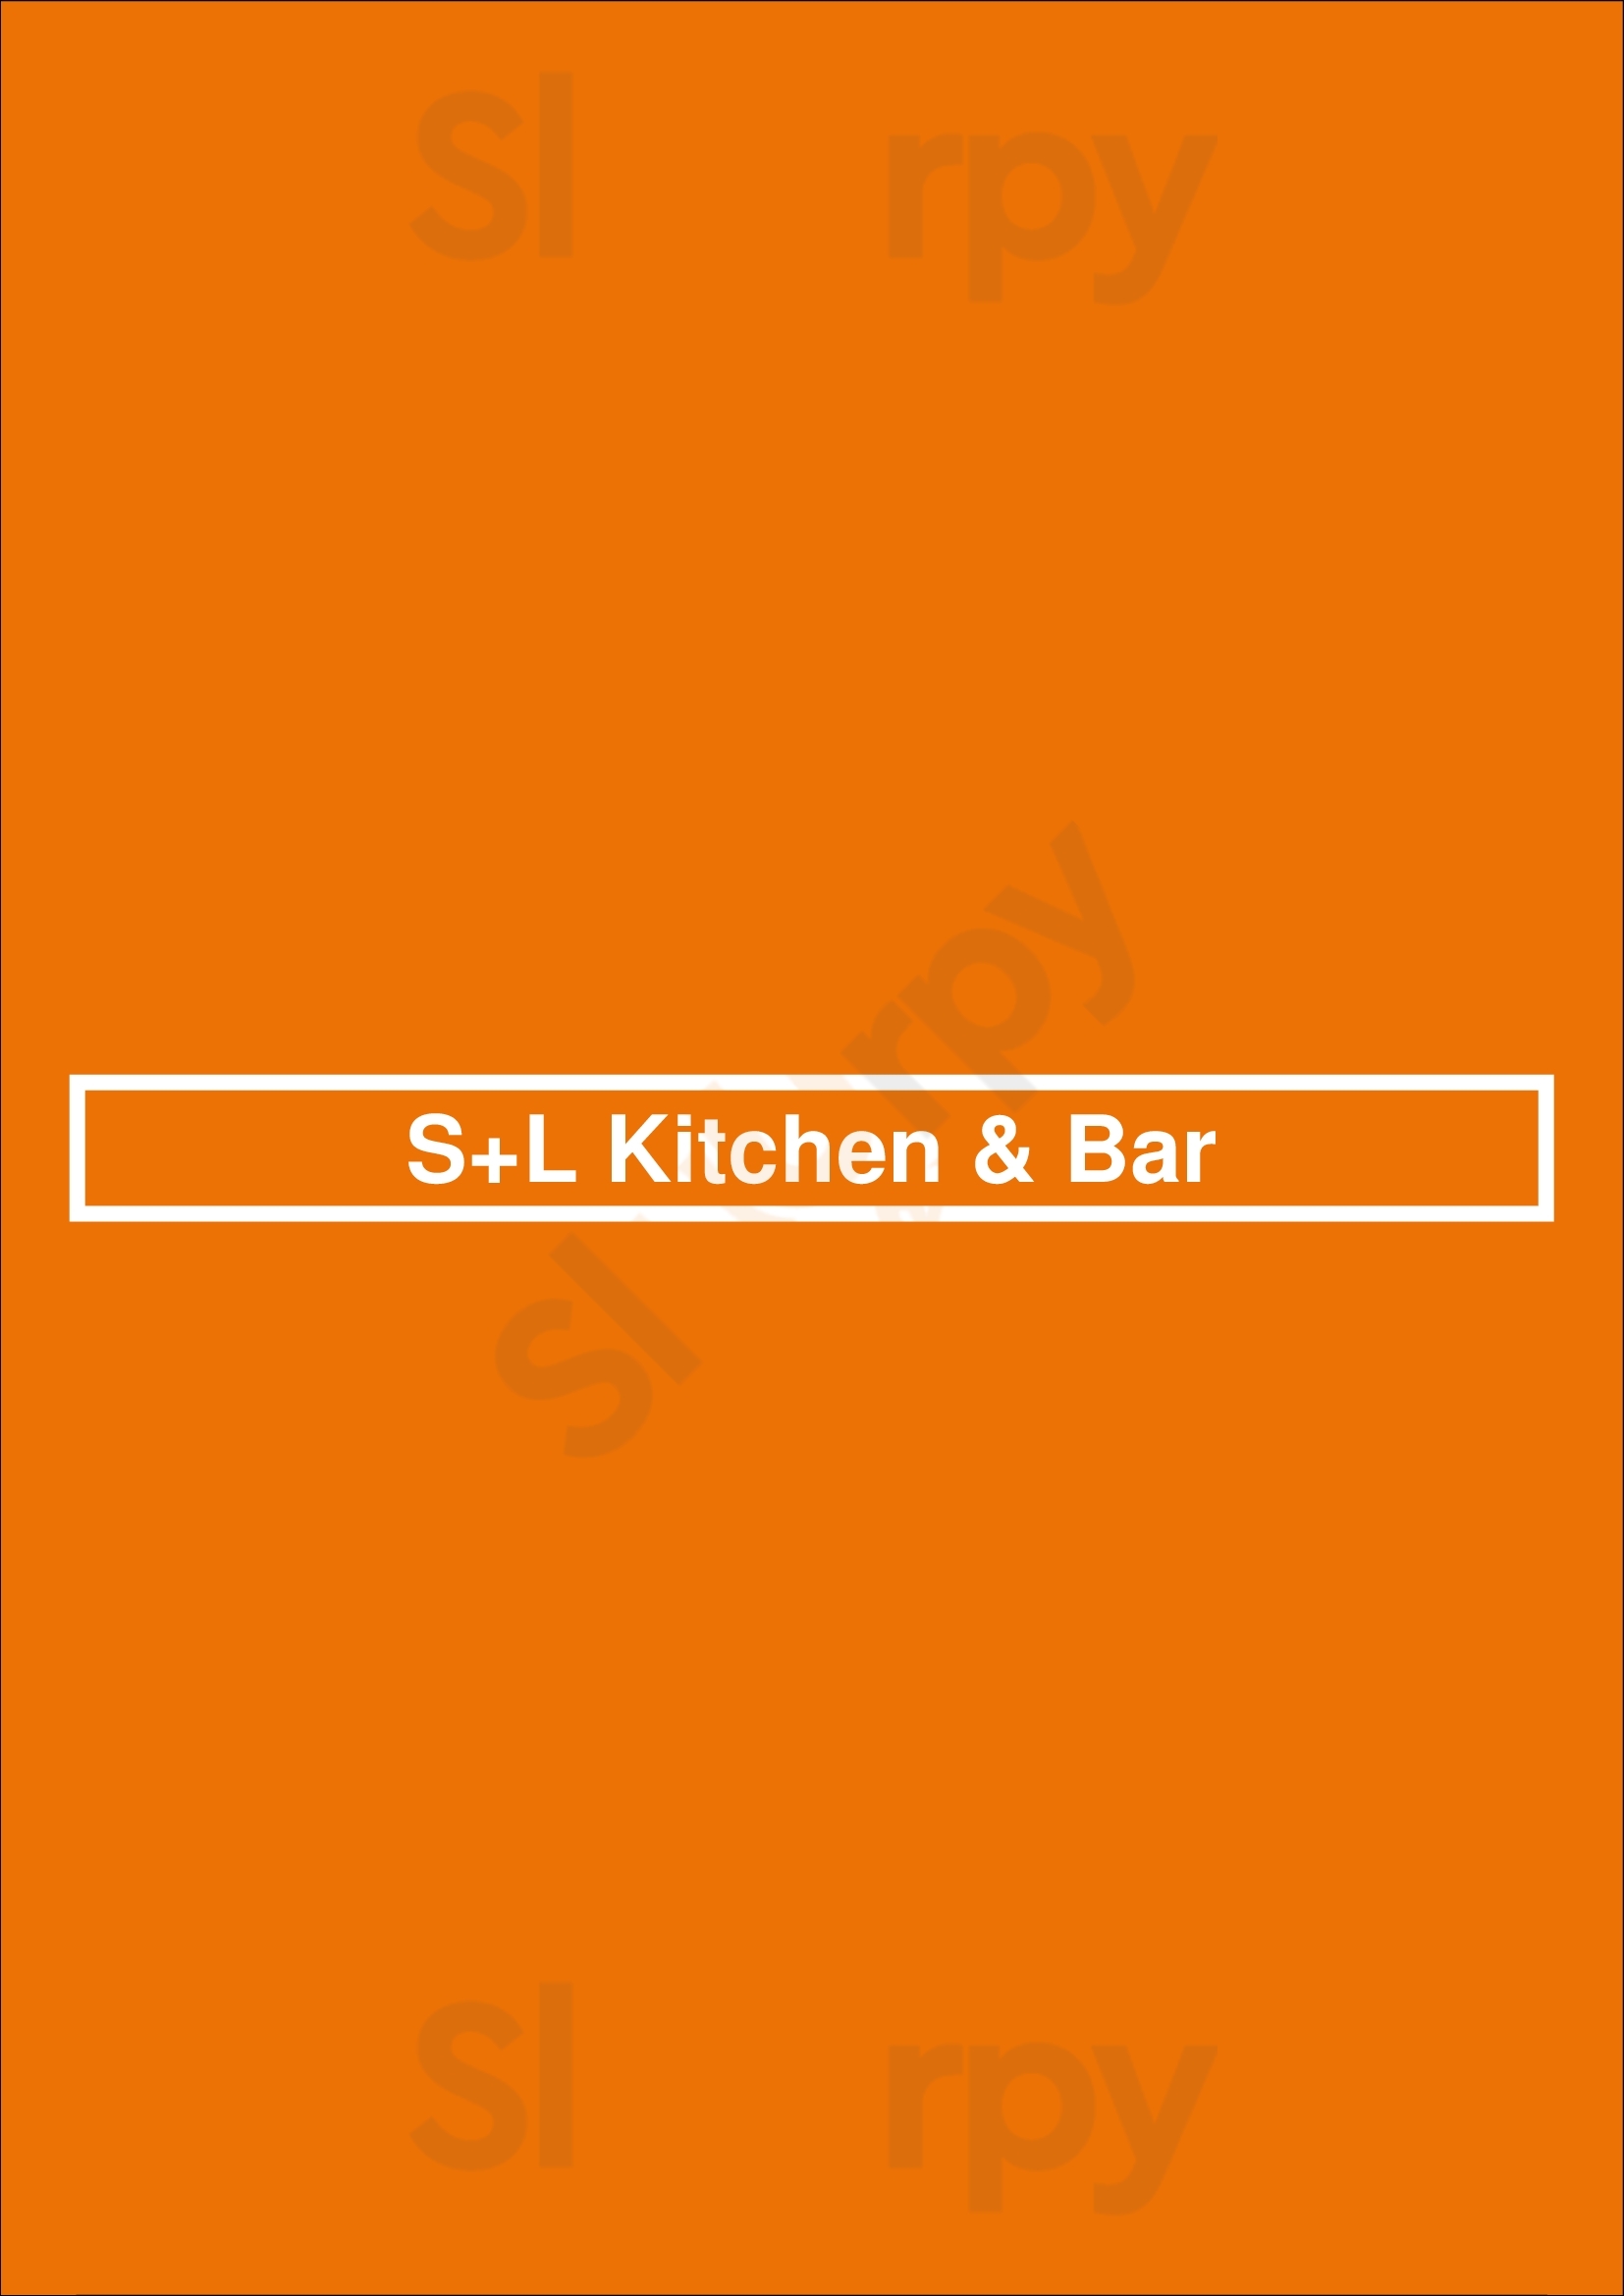 S+l Kitchen & Bar Abbotsford Menu - 1